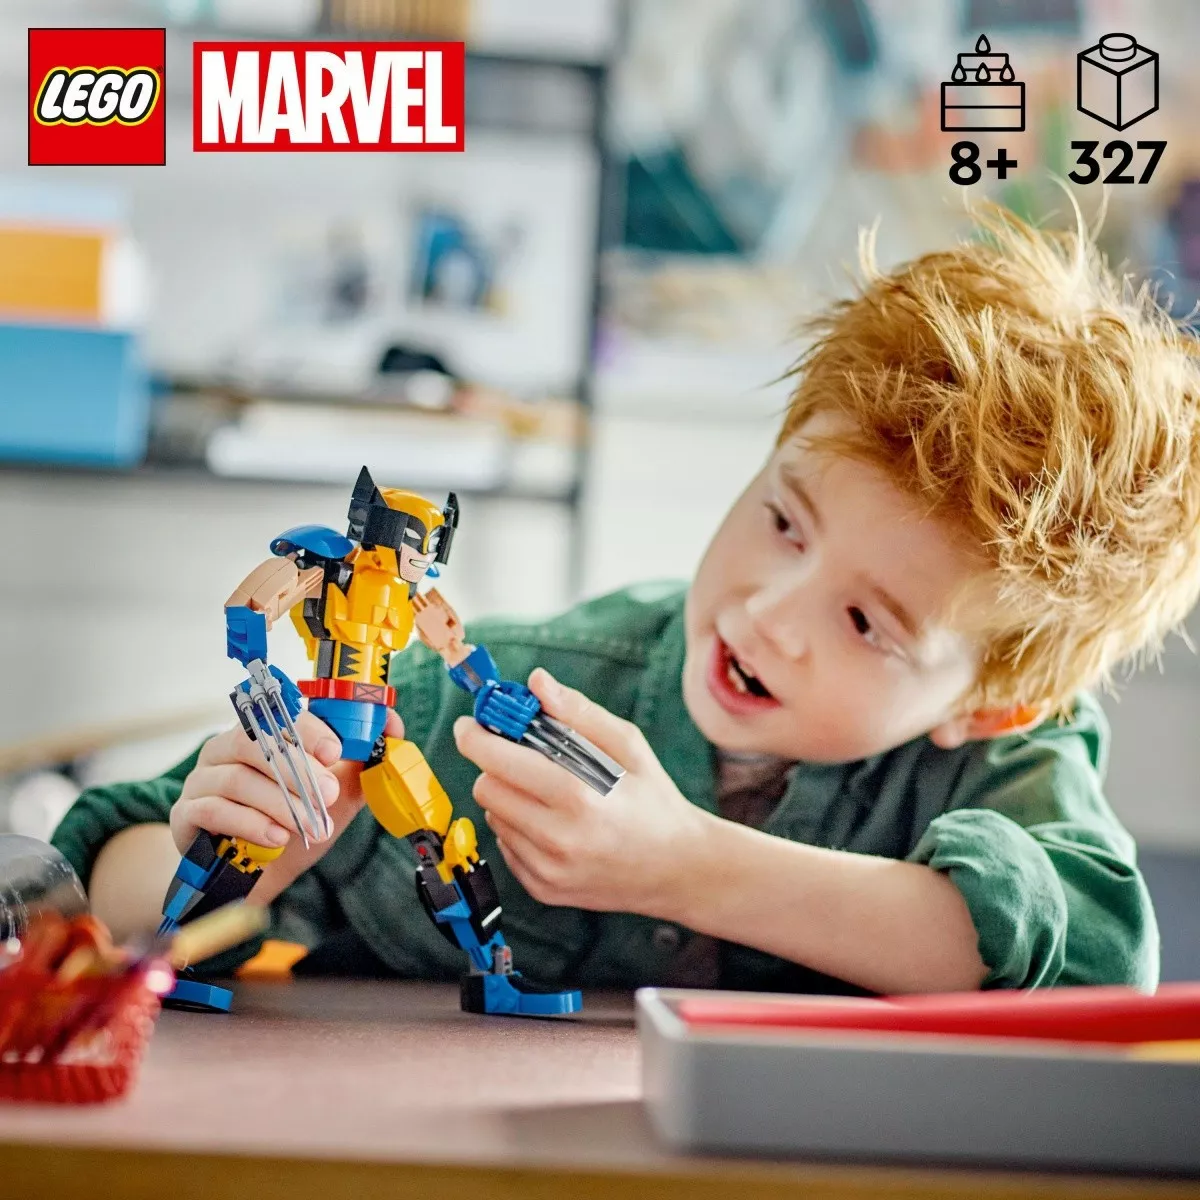 LEGO Klocki Super Heroes 76257 Marvel Figurka Wolverinea do zbudowania